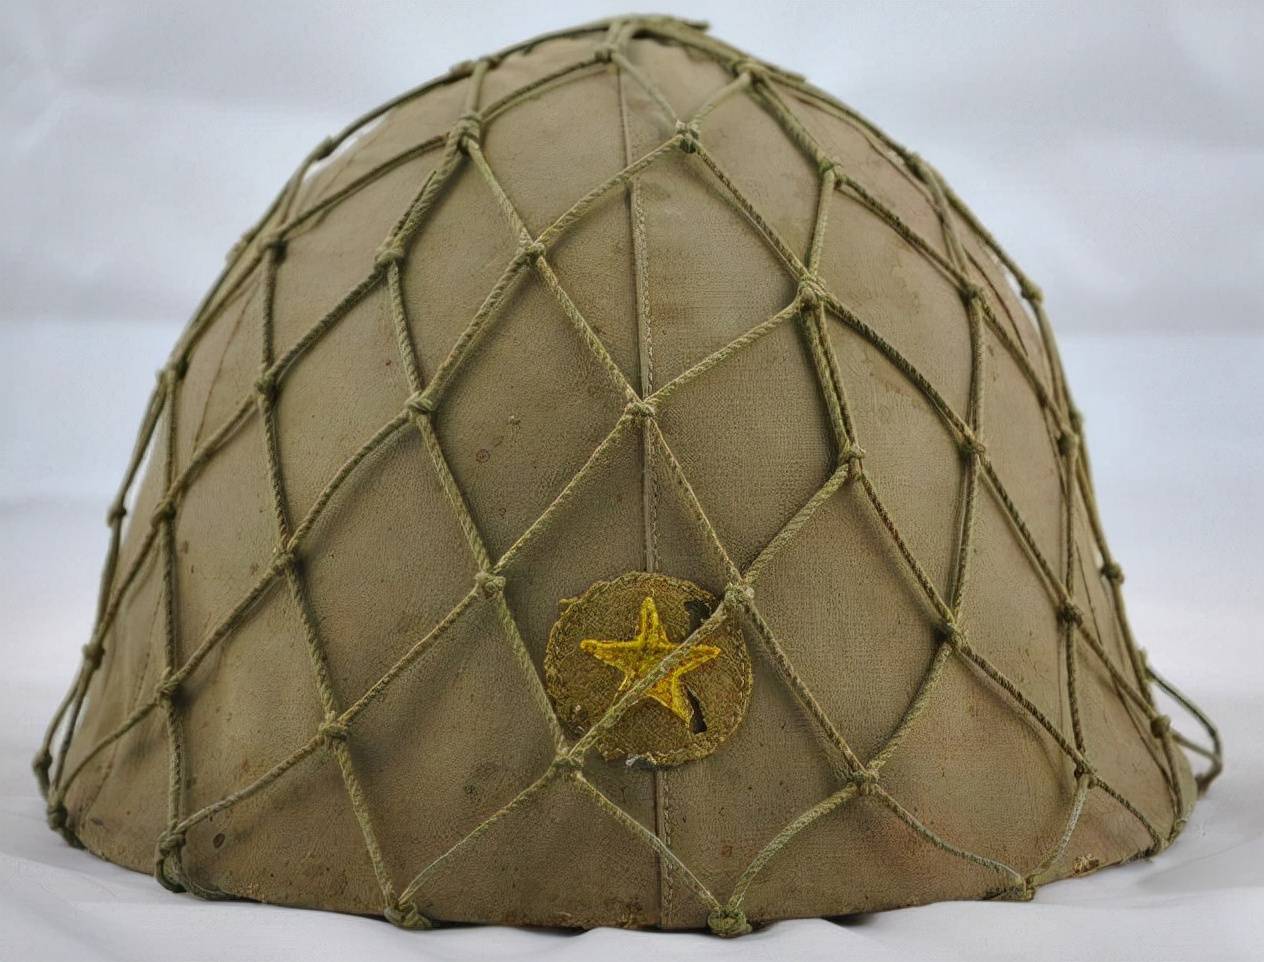 原创头盔掉漆害死联队长二战日军头盔为什么罩渔网其实大有用处